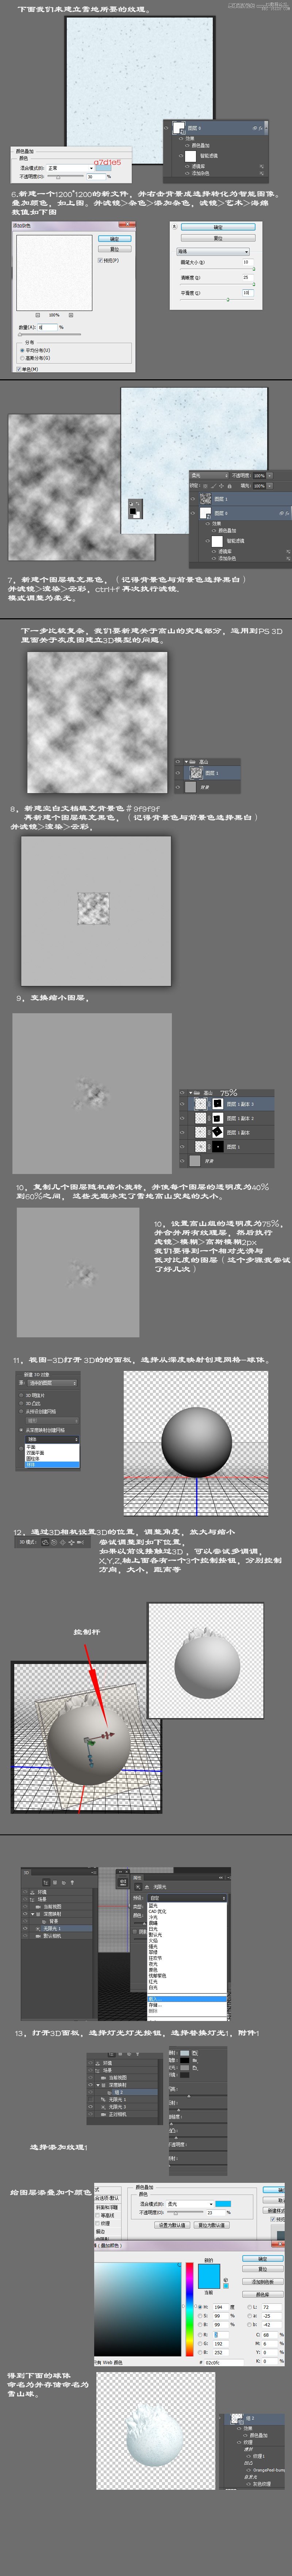 Photoshop使用3D工具制作立体星球,PS教程,16xx8.com教程网